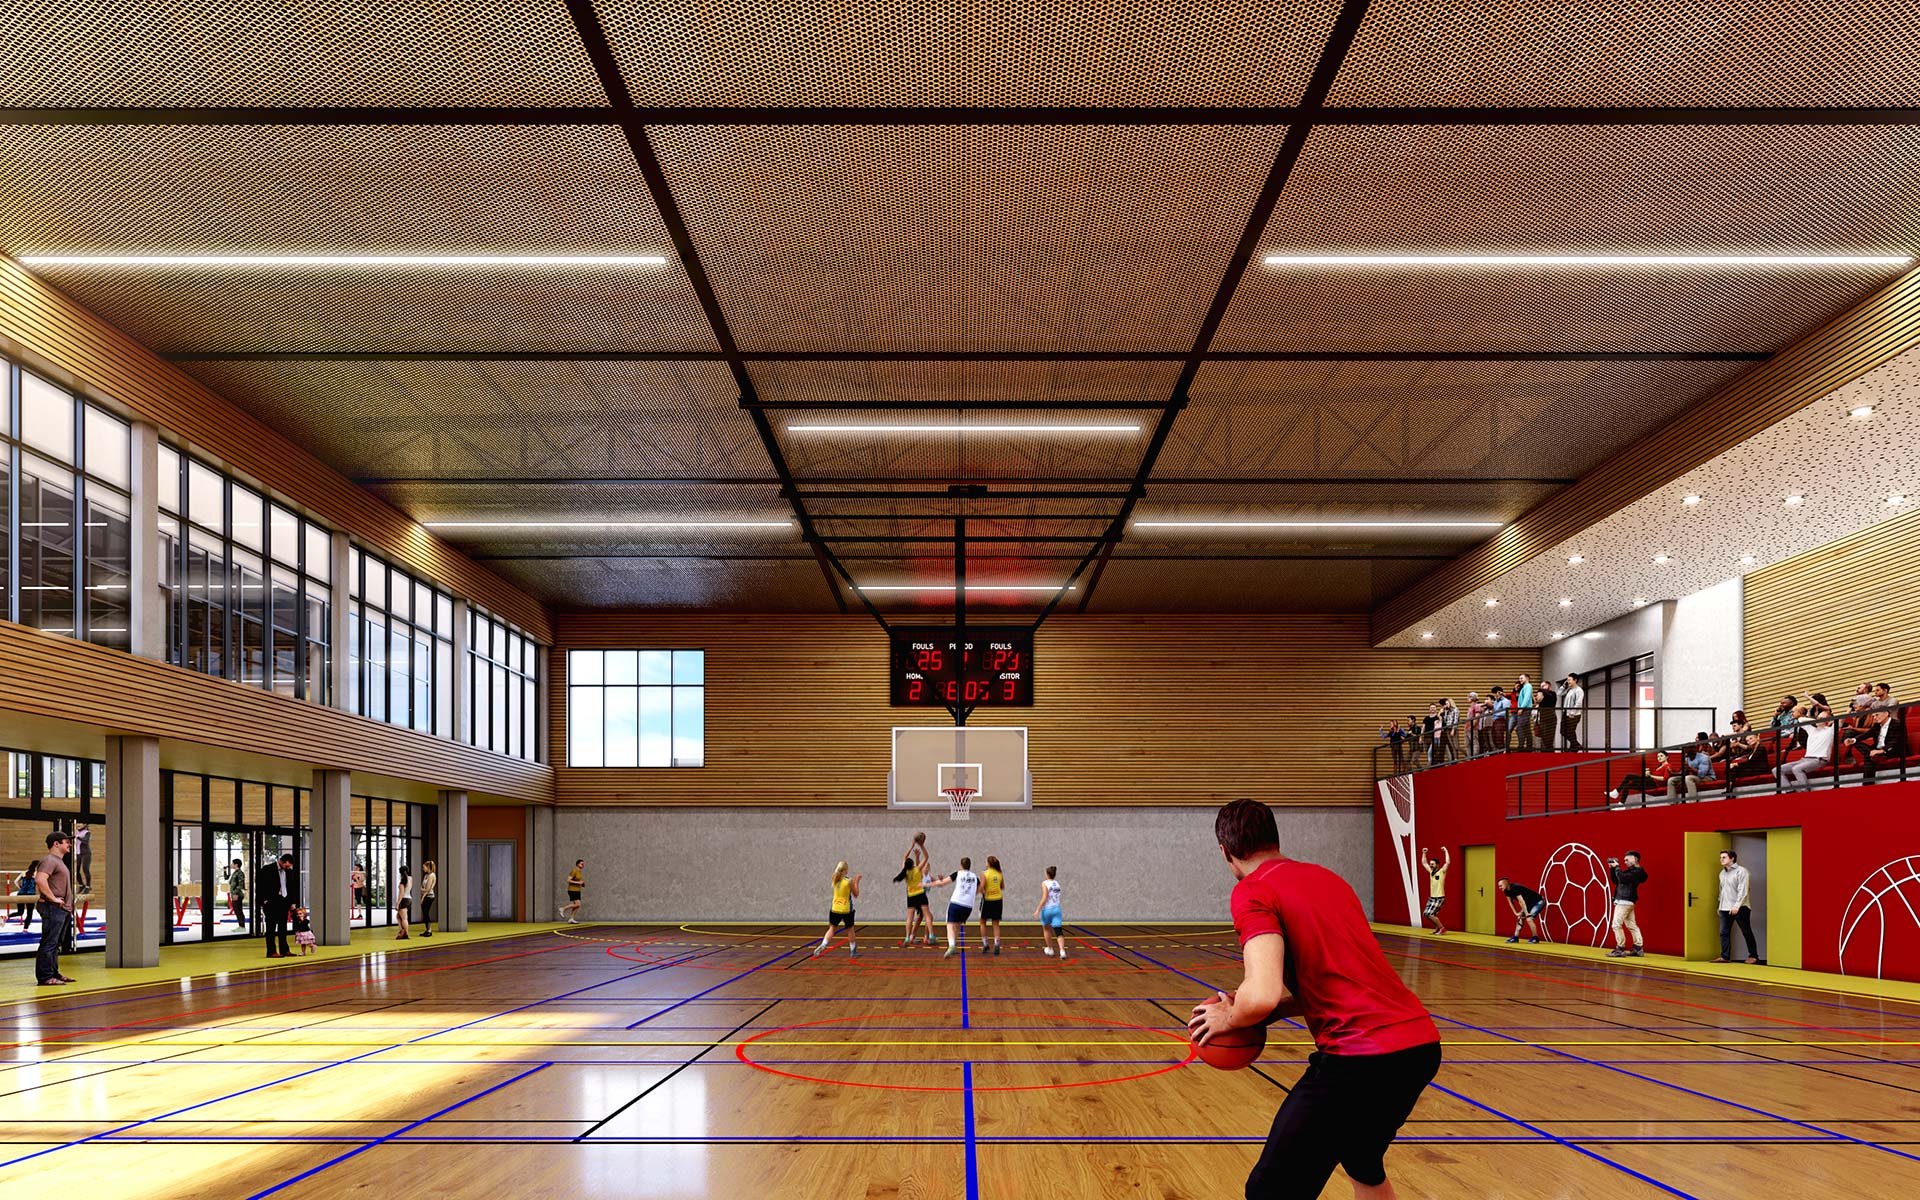 Salle de sport en 3D réalisée par Valentinstudio pour un concours de visualisation architecturale